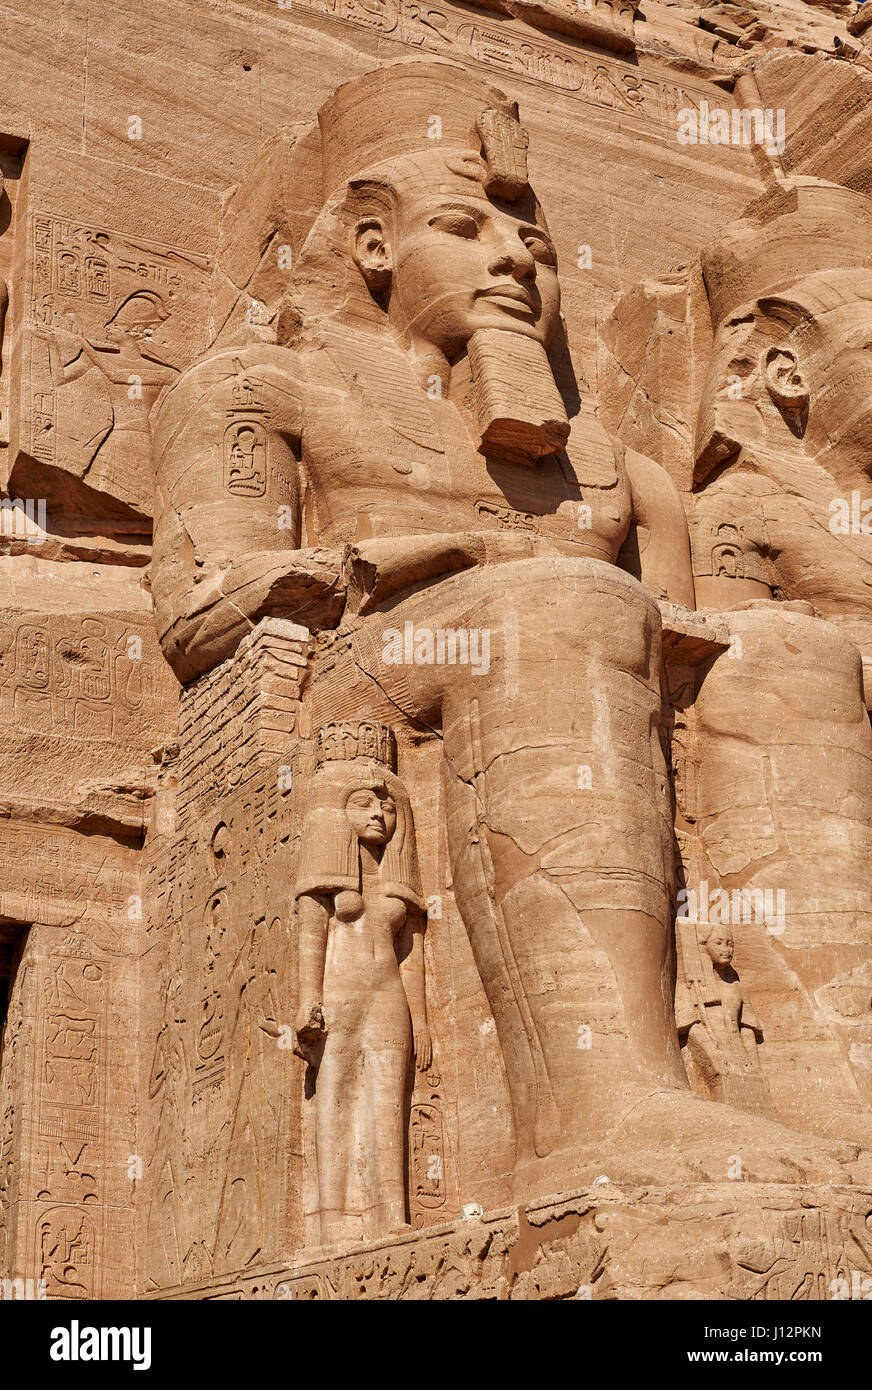 Großer Tempel Ramses’ II. , Abu Simbel, Aegypten, Afrika |Great Temple of Ramesses II, Abu Simbel temples, Egypt, Africa| Stock Photo